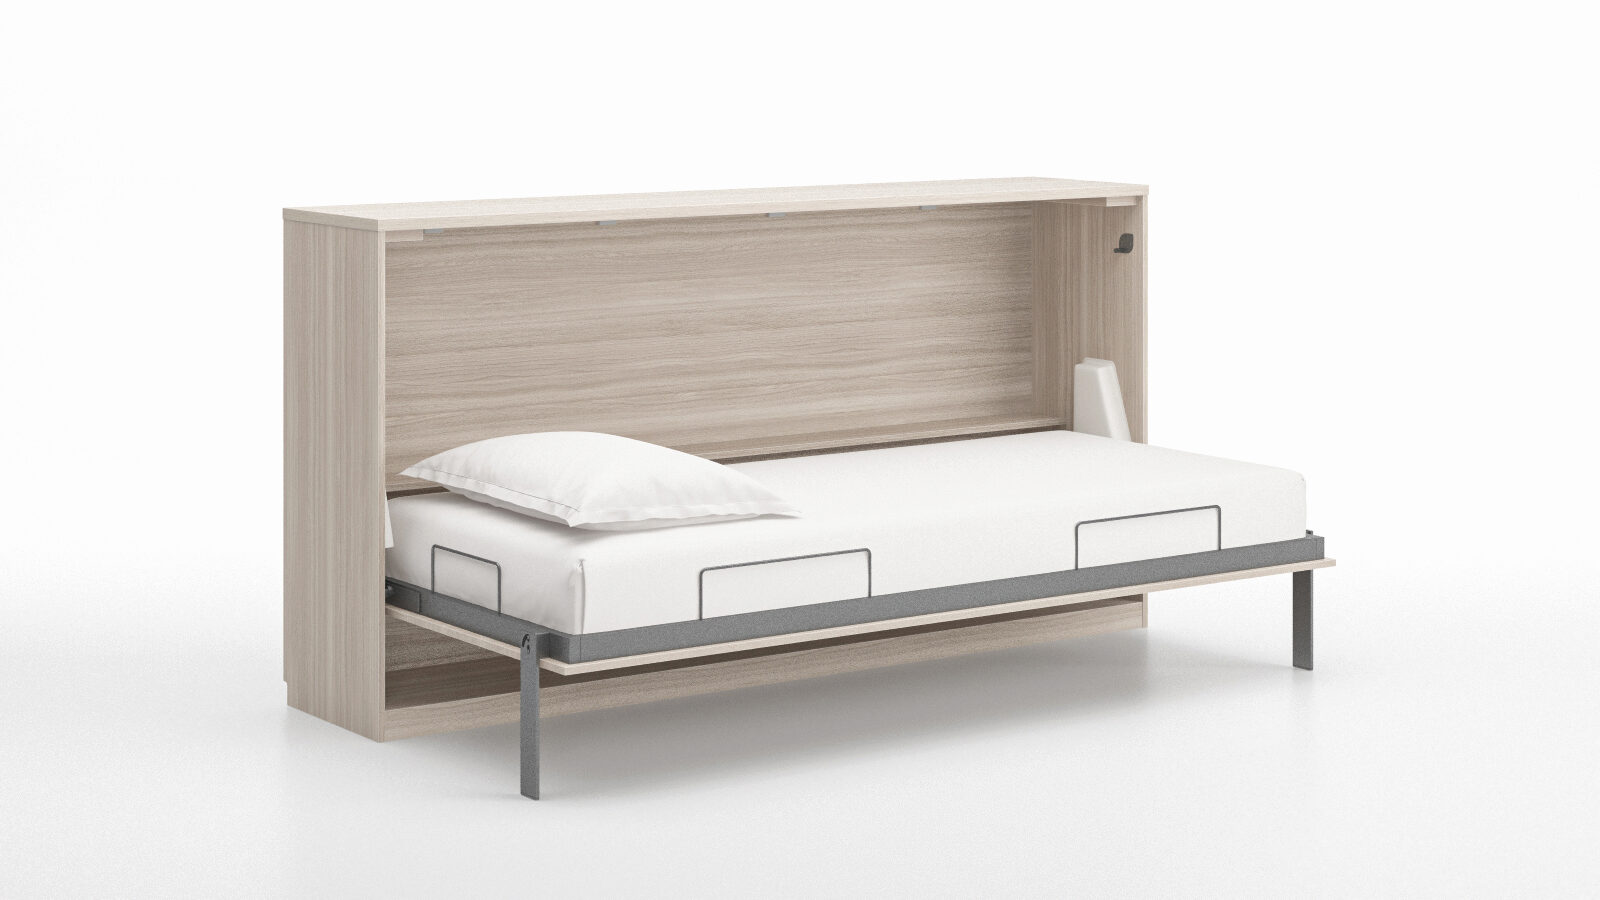 Кровать откидная горизонтальная Smart Comfort Extra, цвет Ясень boneco фильтр аh300 comfort для климатического комплекса boneco h300 1